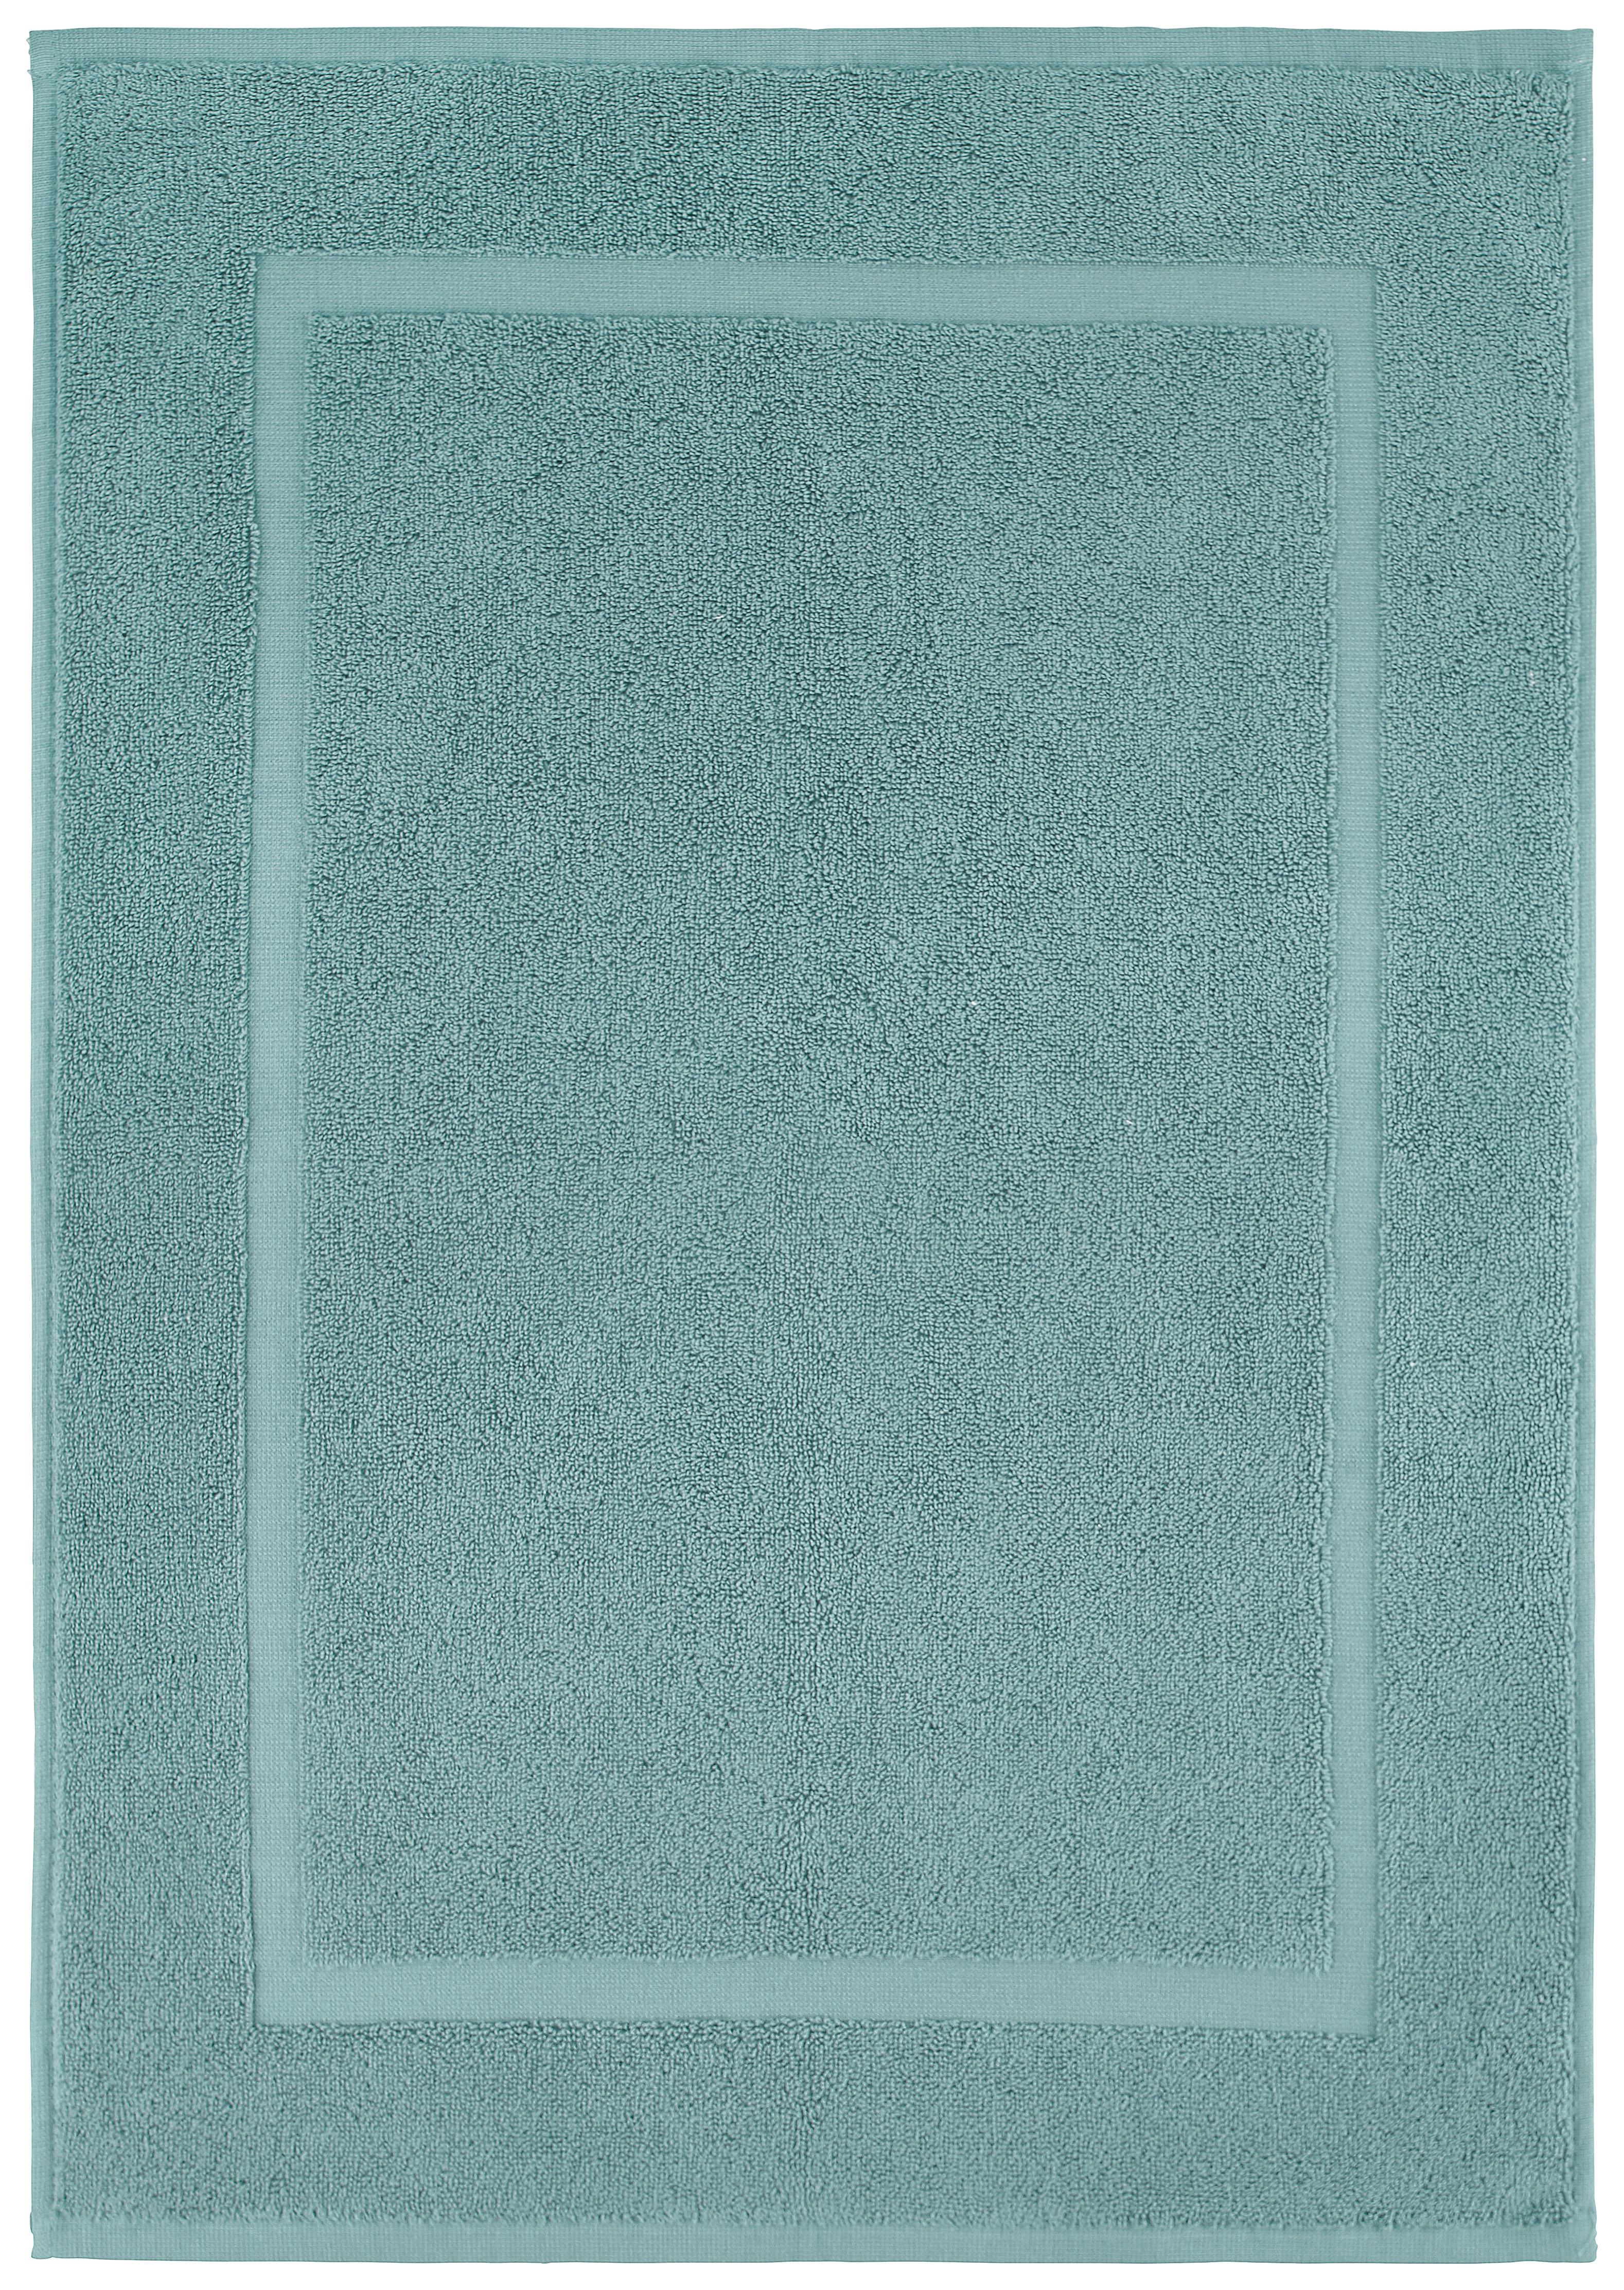 Předložka Koupelnová Melanie, 50/70cm, Světle Modrá - světle modrá, textil (50/70cm) - Modern Living